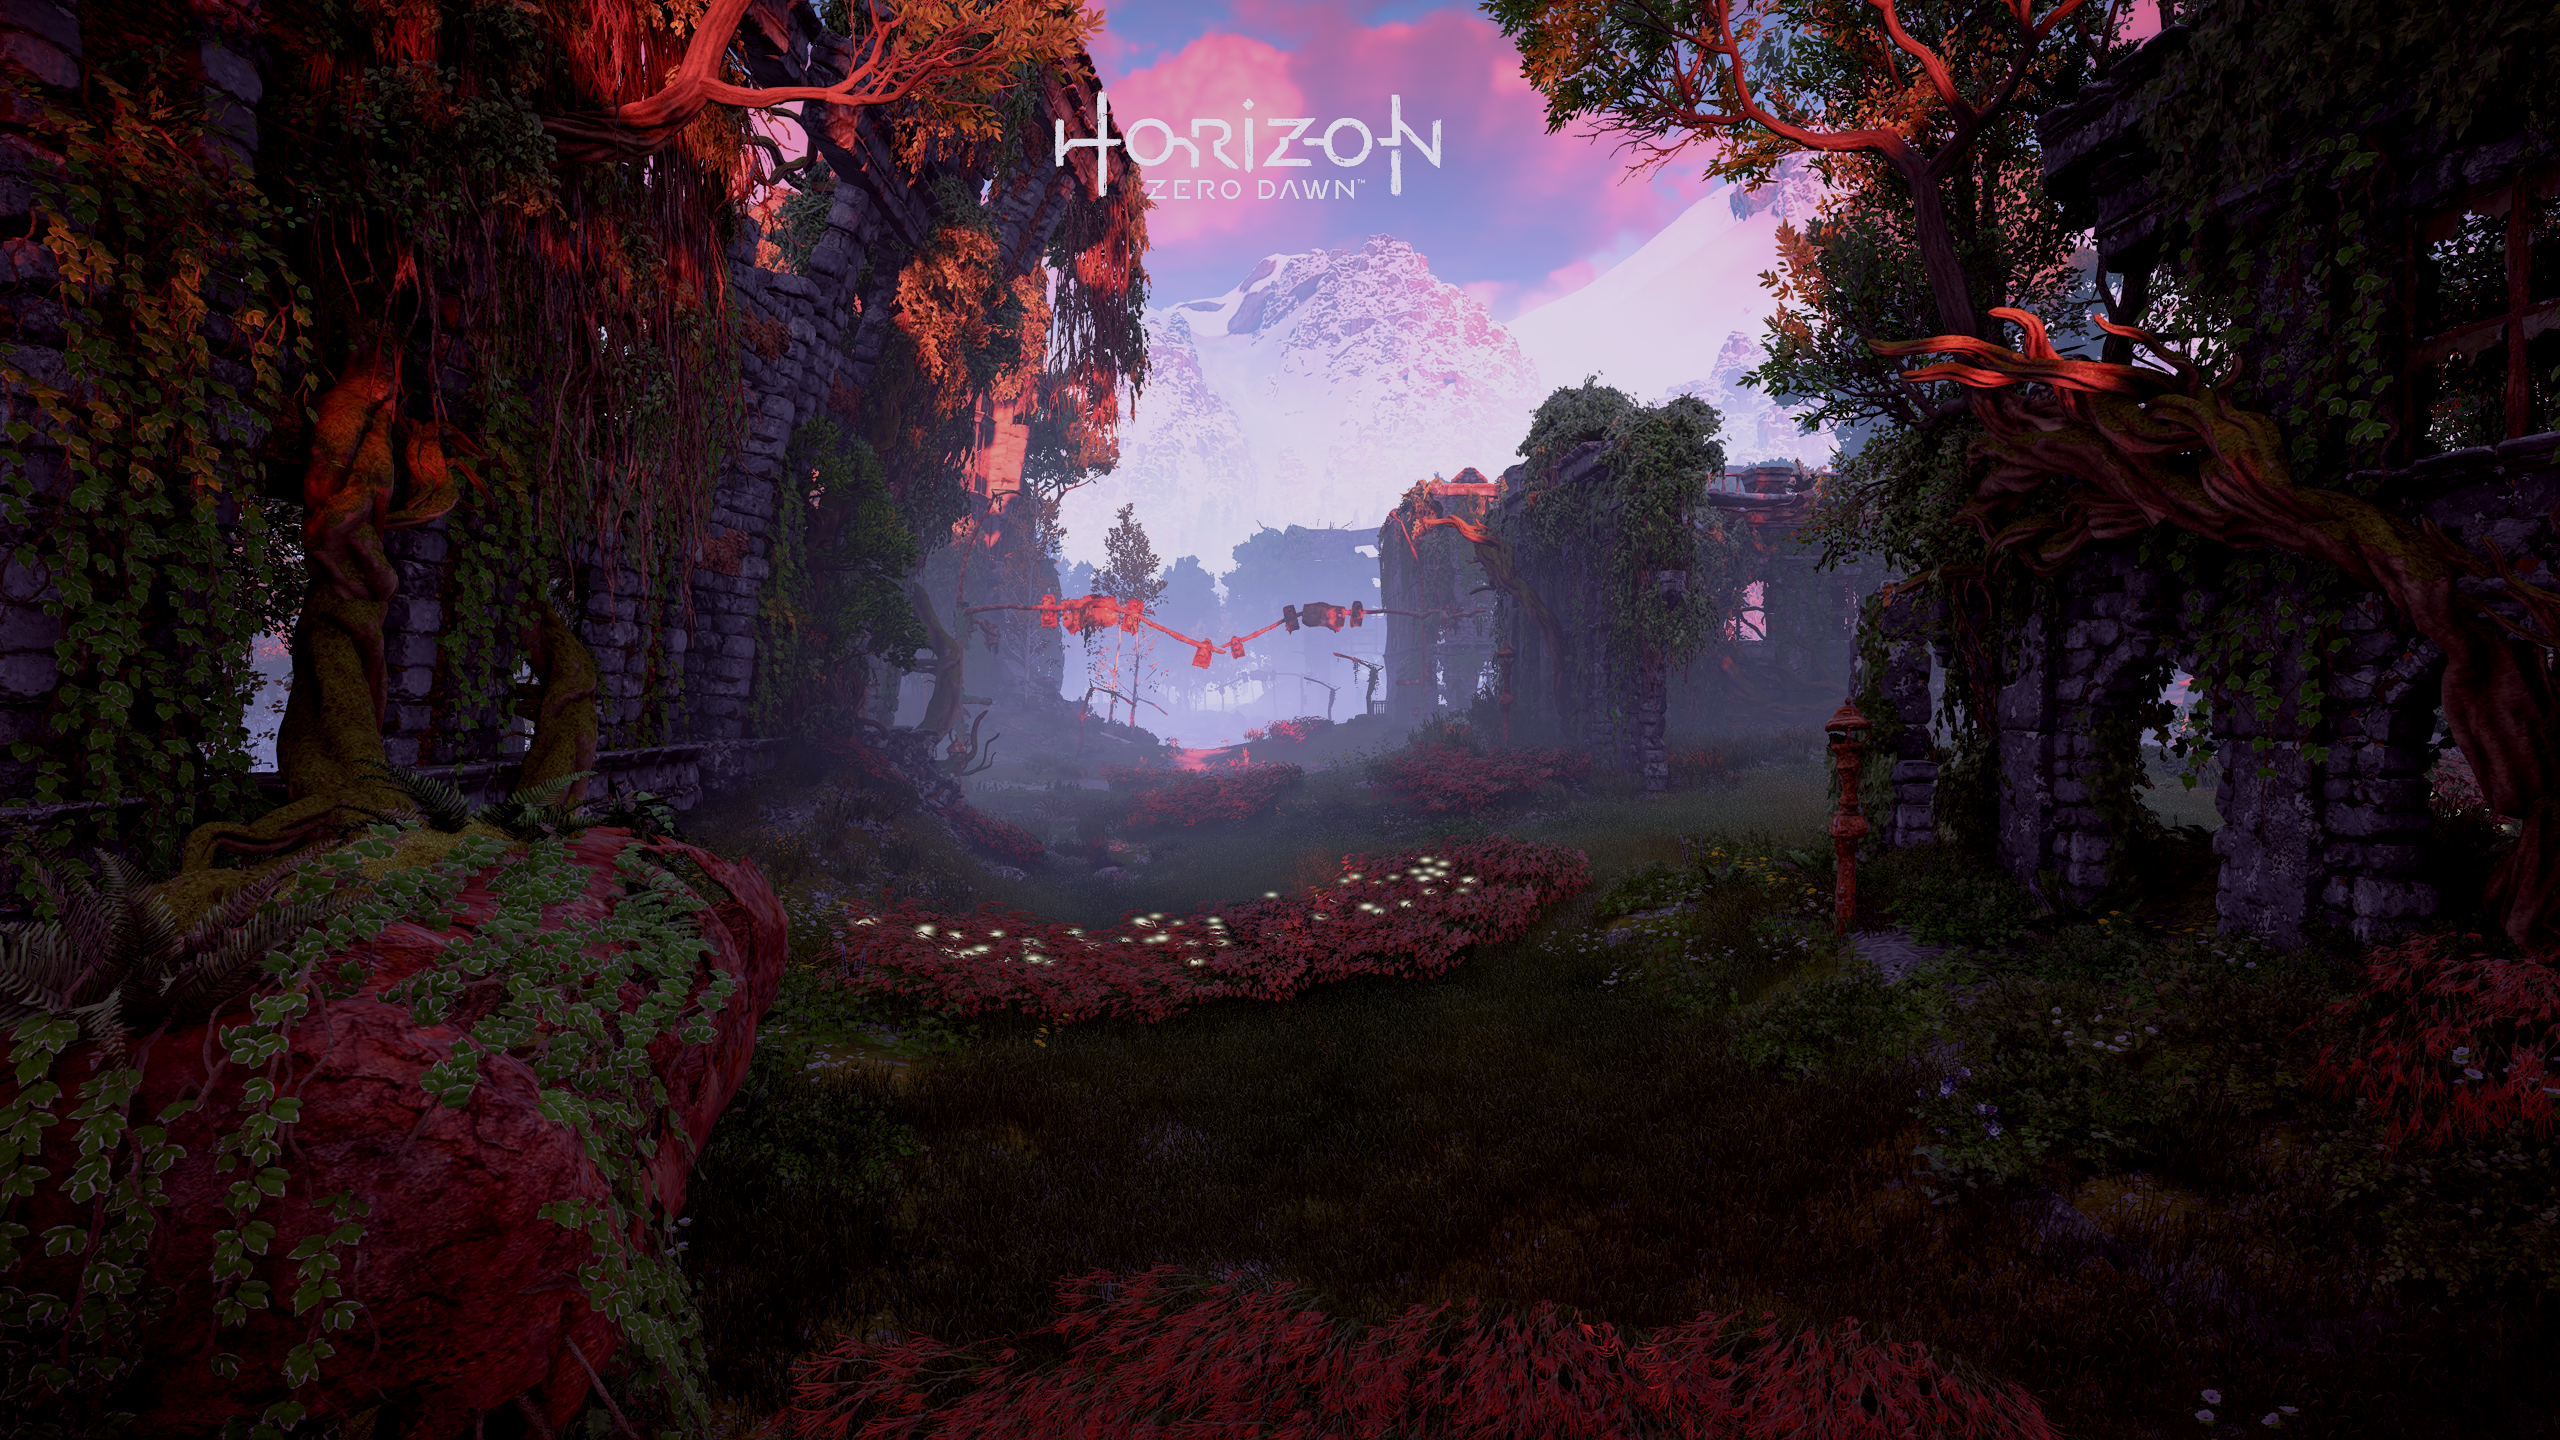 General 2560x1440 Horizon: Zero Dawn video games screen shot